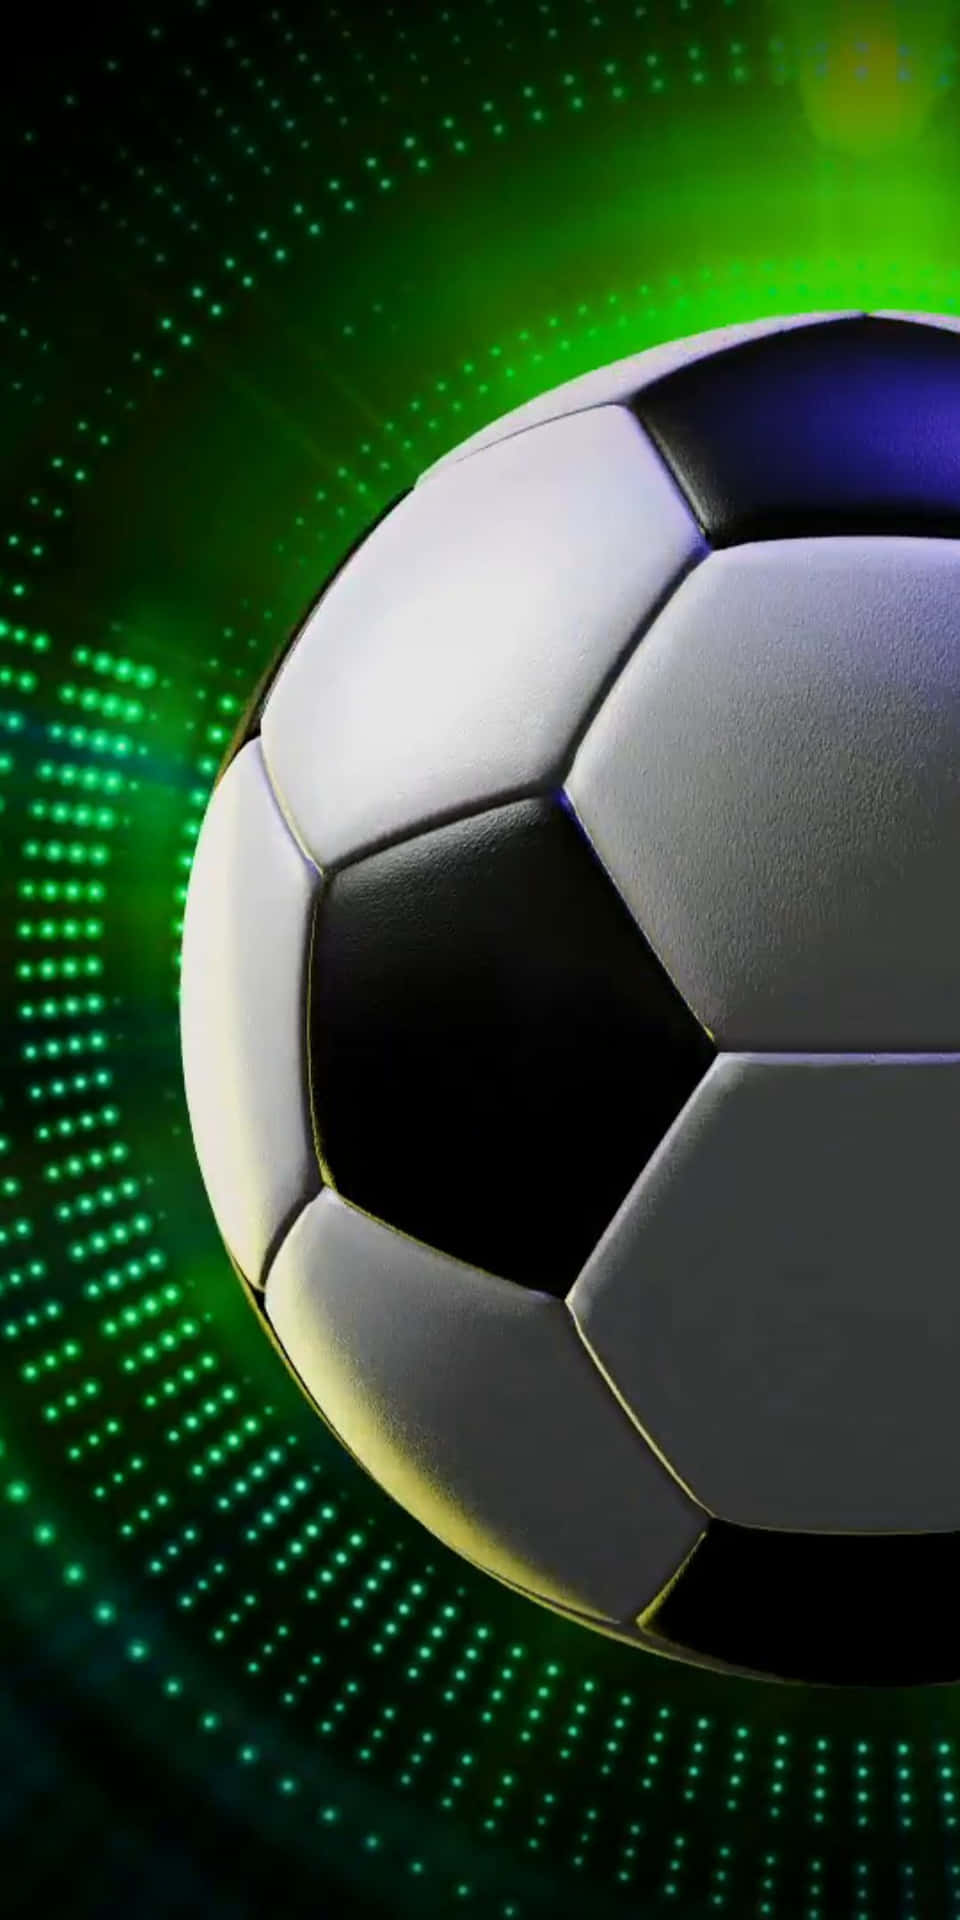 Fondode Pantalla De Fútbol Del Pixel 3 Con Una Bola De Neón Verde Brillante.